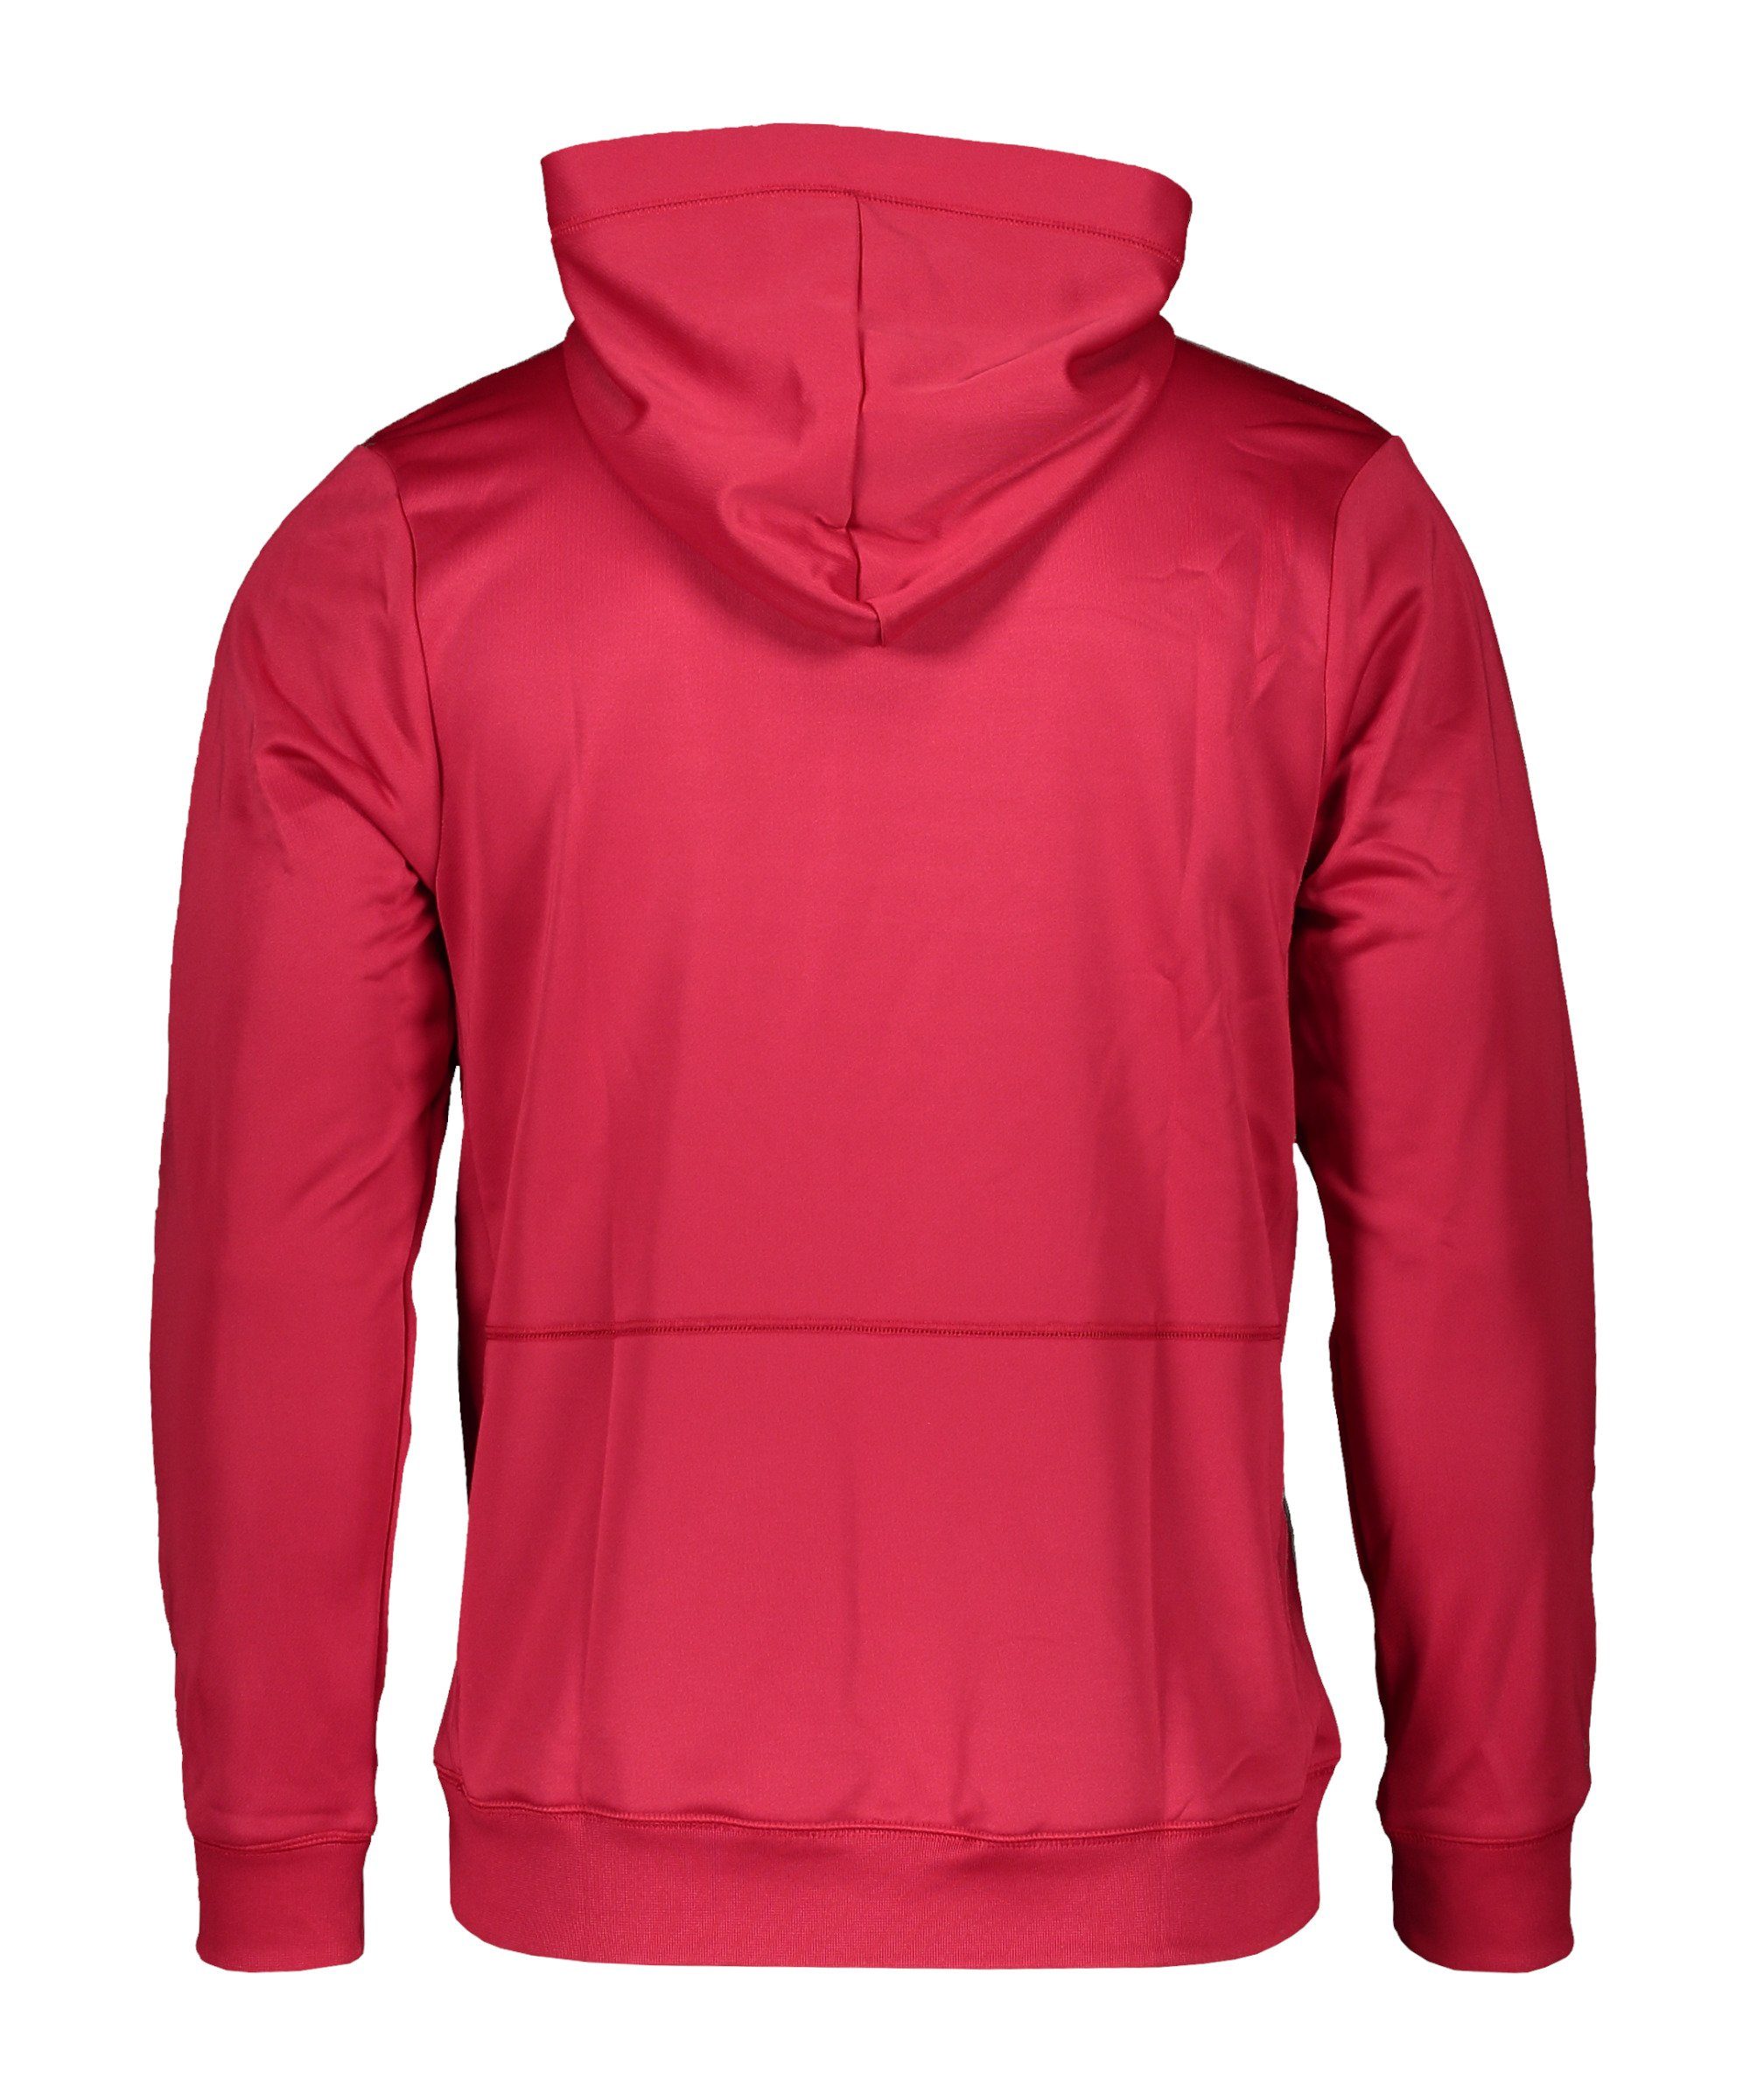 F.C. Fleece Sweatshirt Sportswear Nike pinkschwarzweiss Hoody